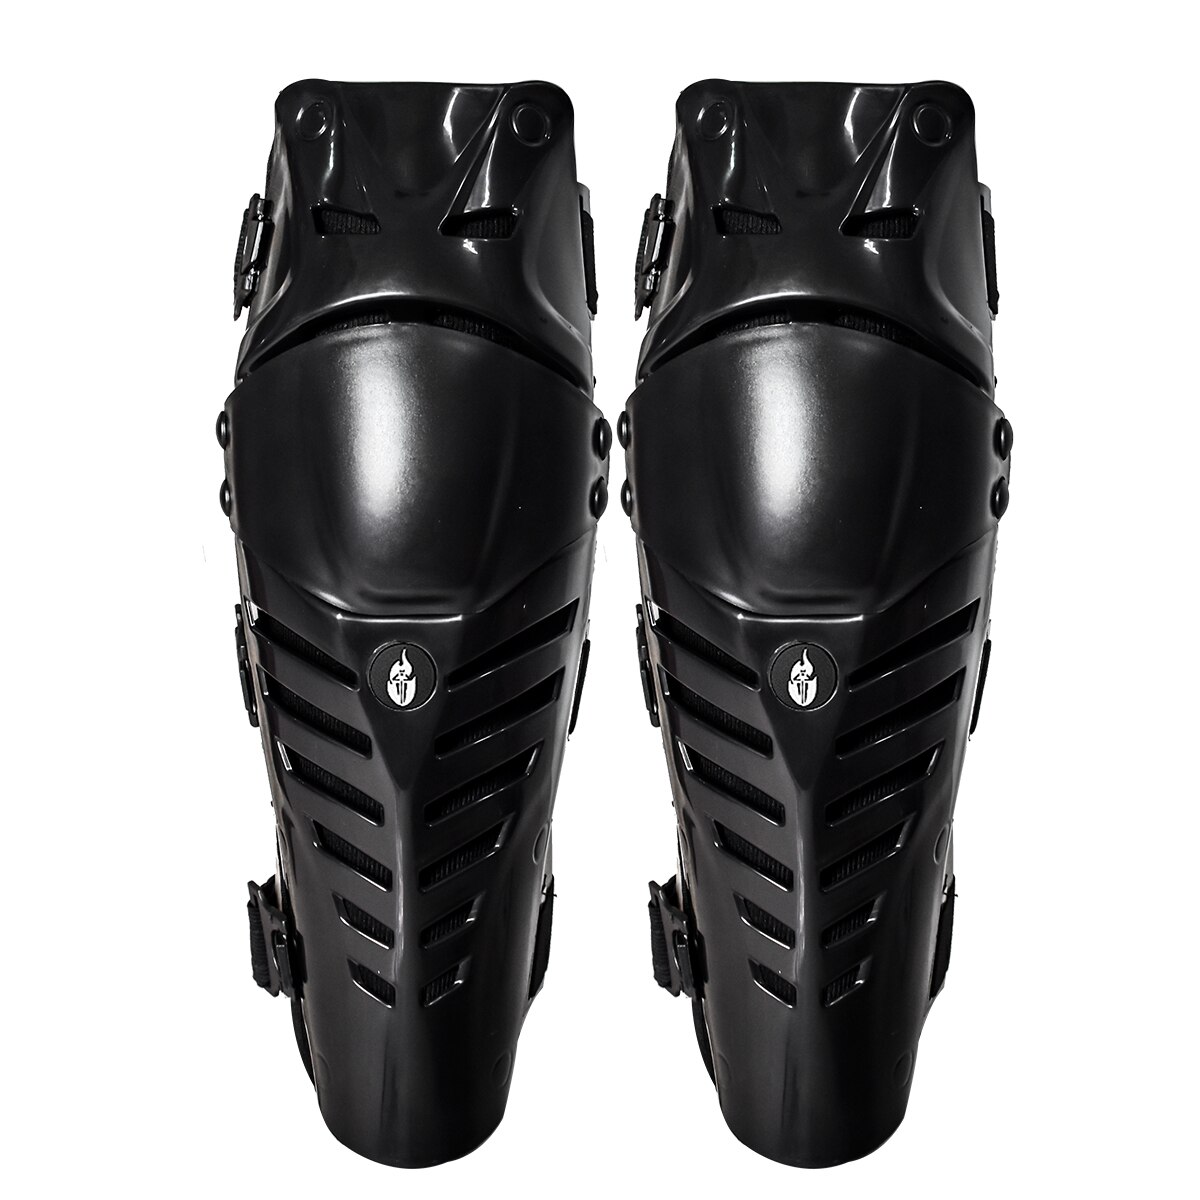 Wosawe motorcykel knæbeskytter motocross knæbøjle støtte skinnebenbeskyttelse knæpude benvarmer skøjteløb skateboard knæpude: Bc313